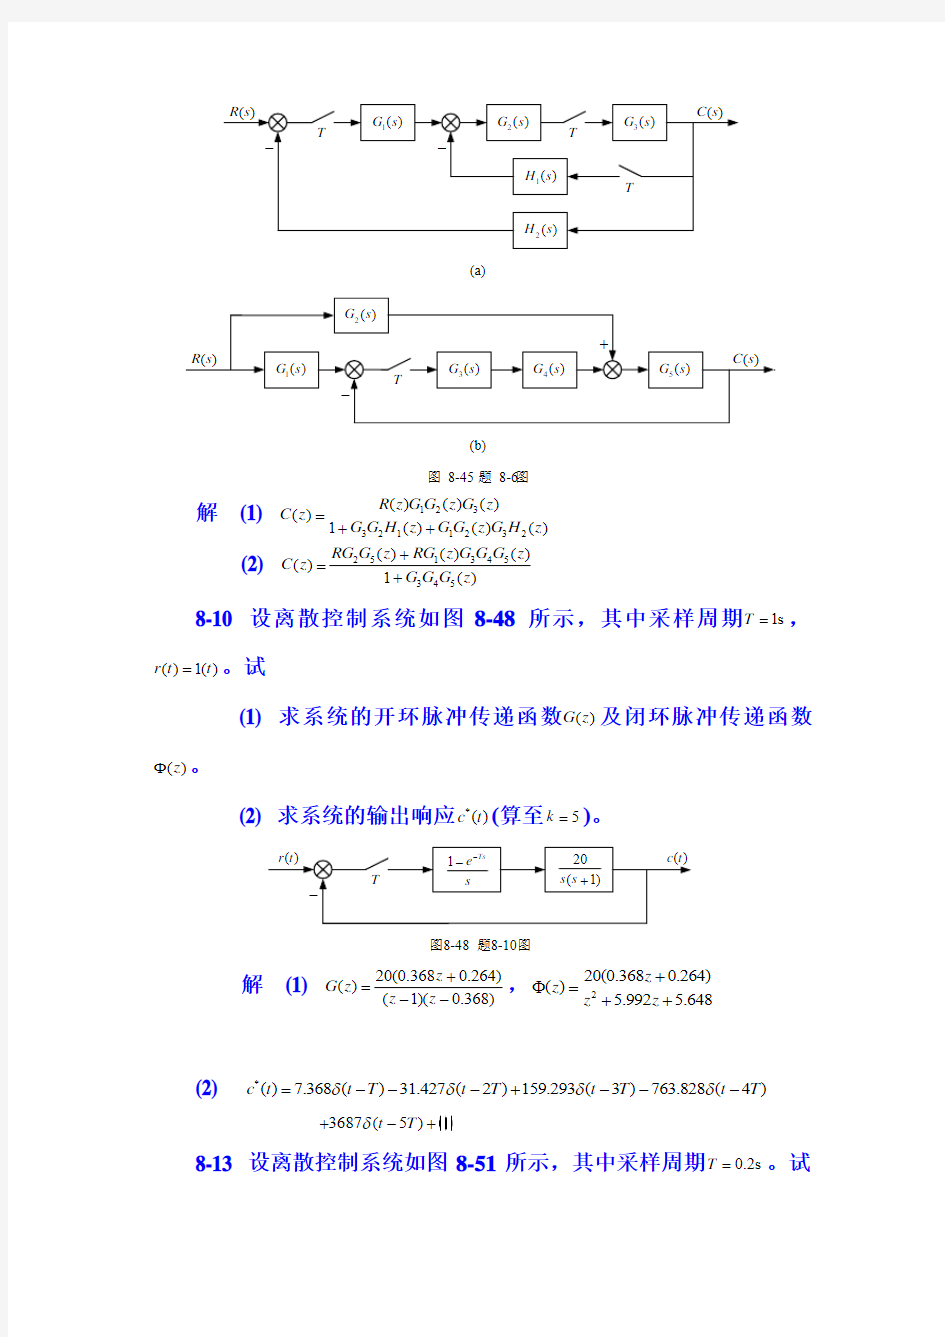 重庆大学自动控制原理第8章 习题参考答案_作业